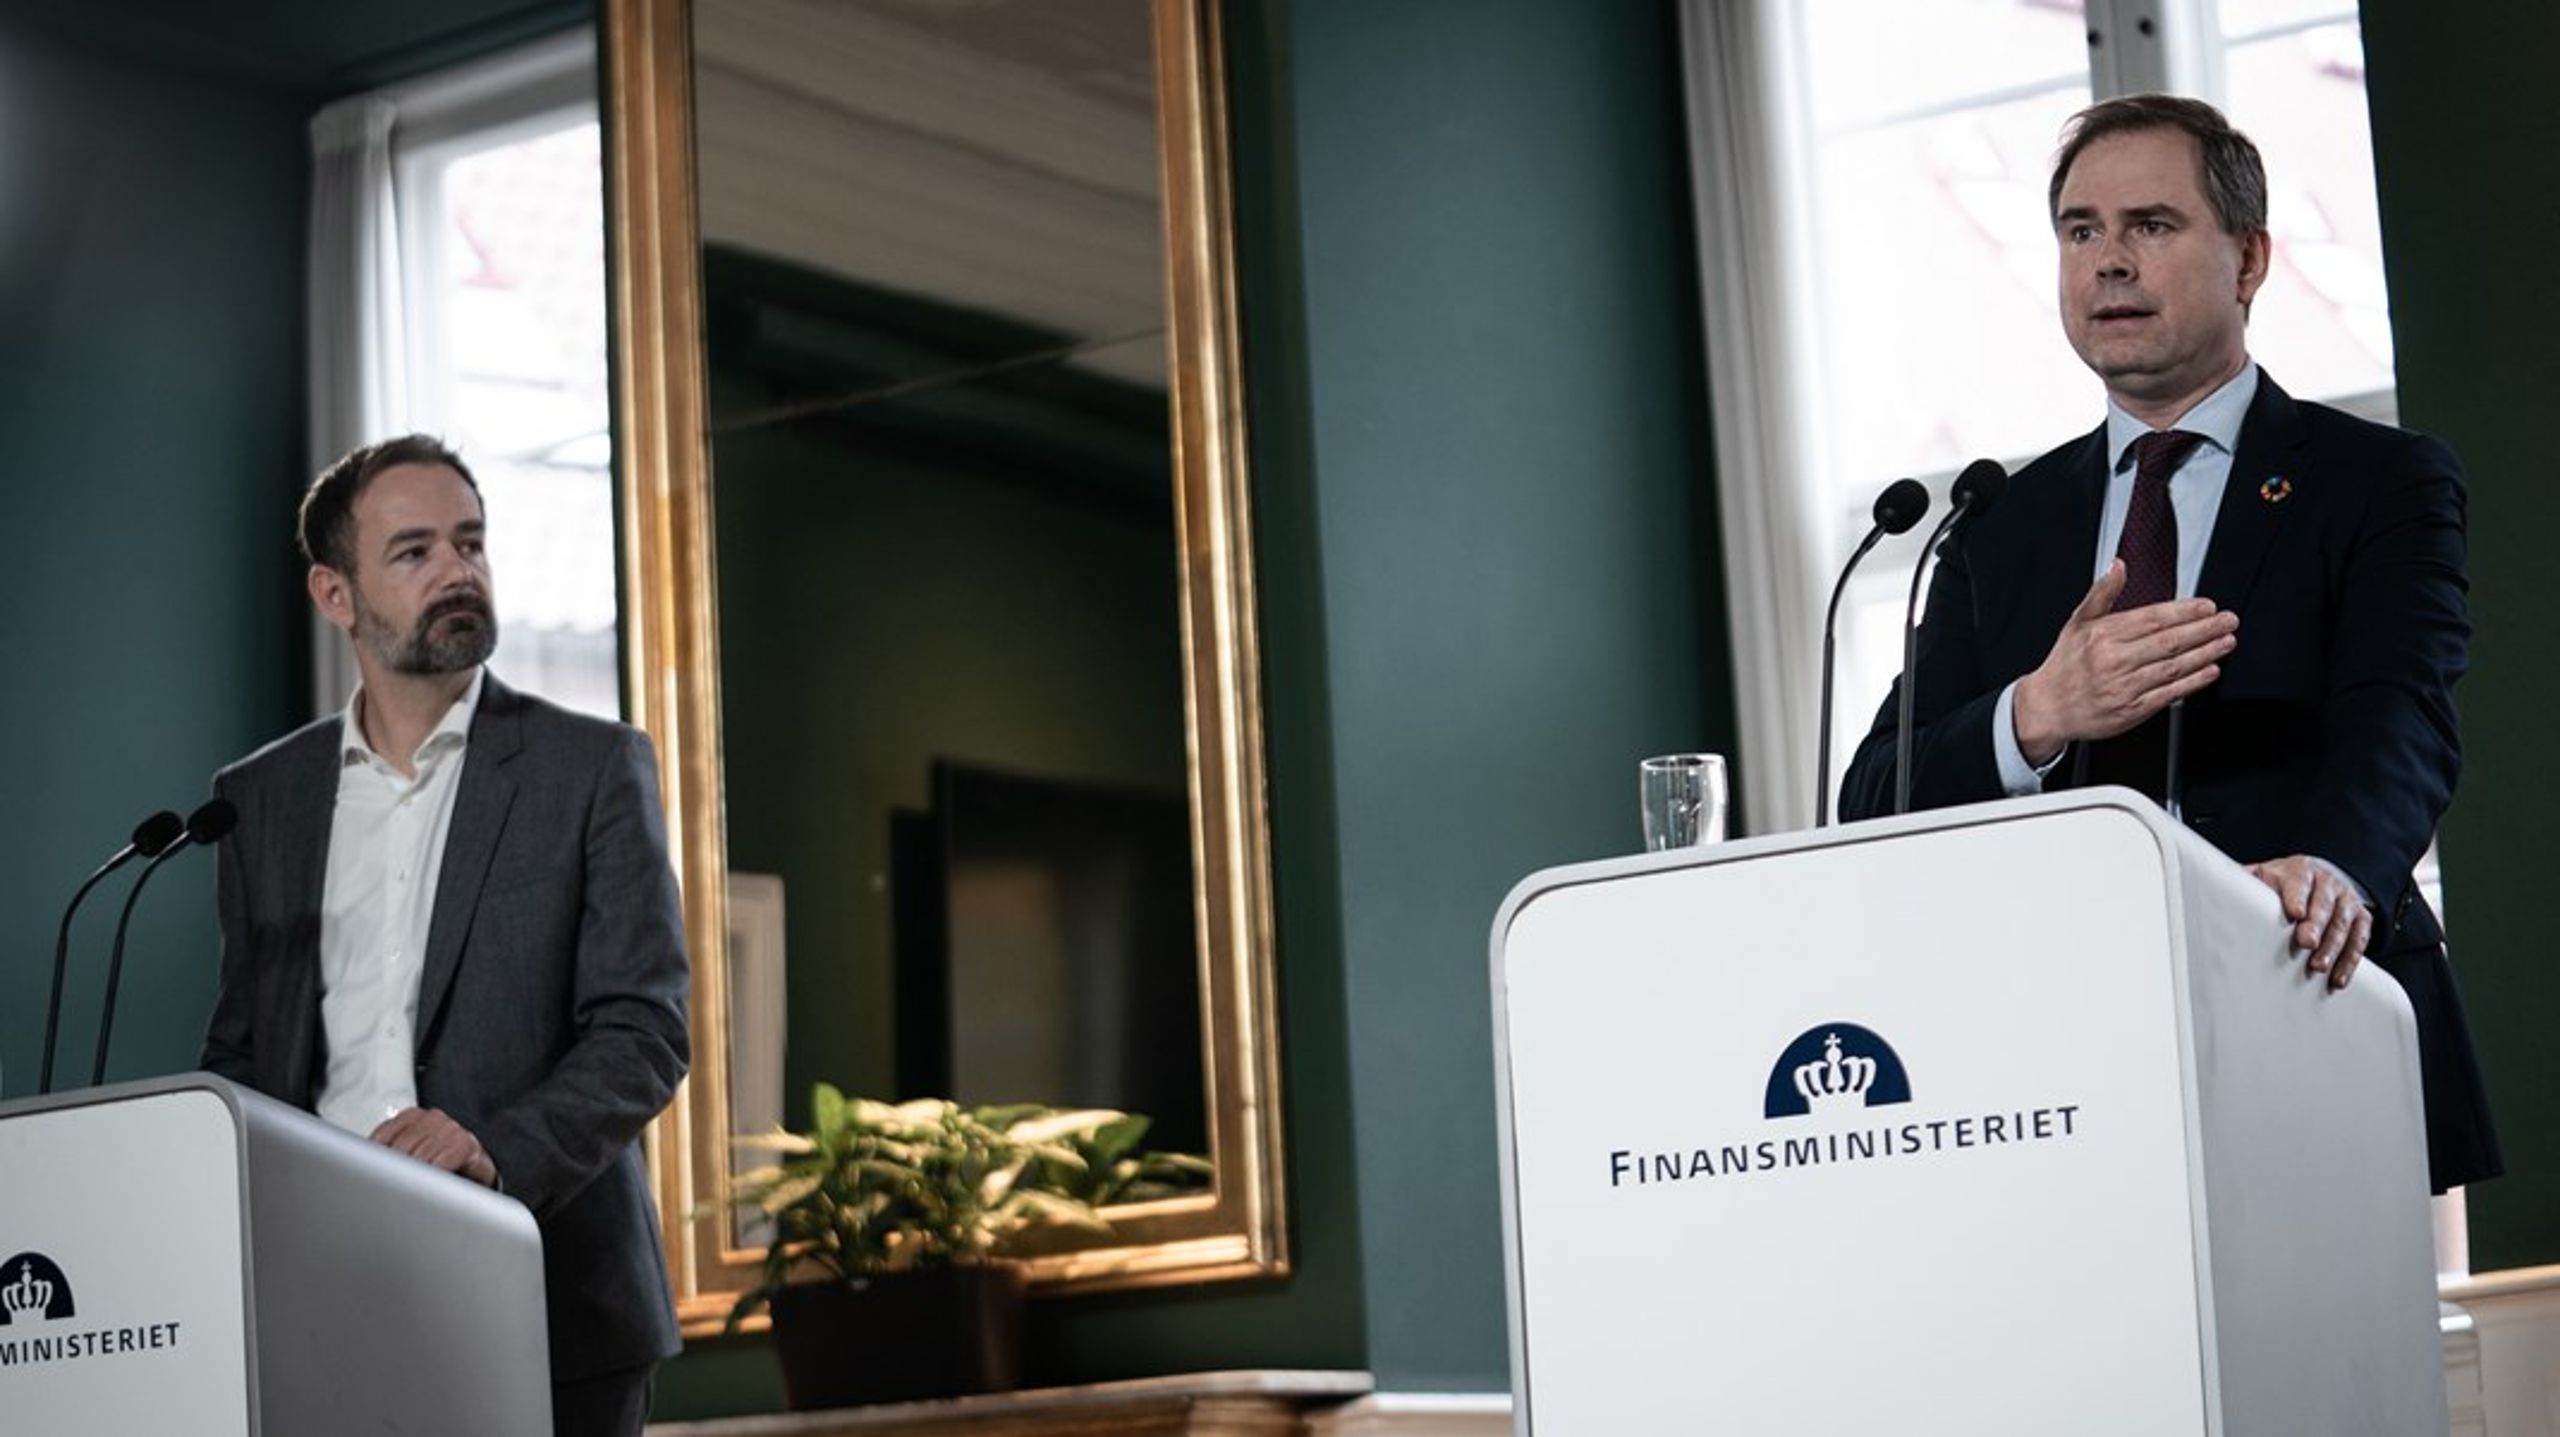 Finansminister Nicolai Wammens grønne planer om bindende mål for de offentlige indkøb, har fået KL-formand Jacob Bundsgaard til at rynke brynene.